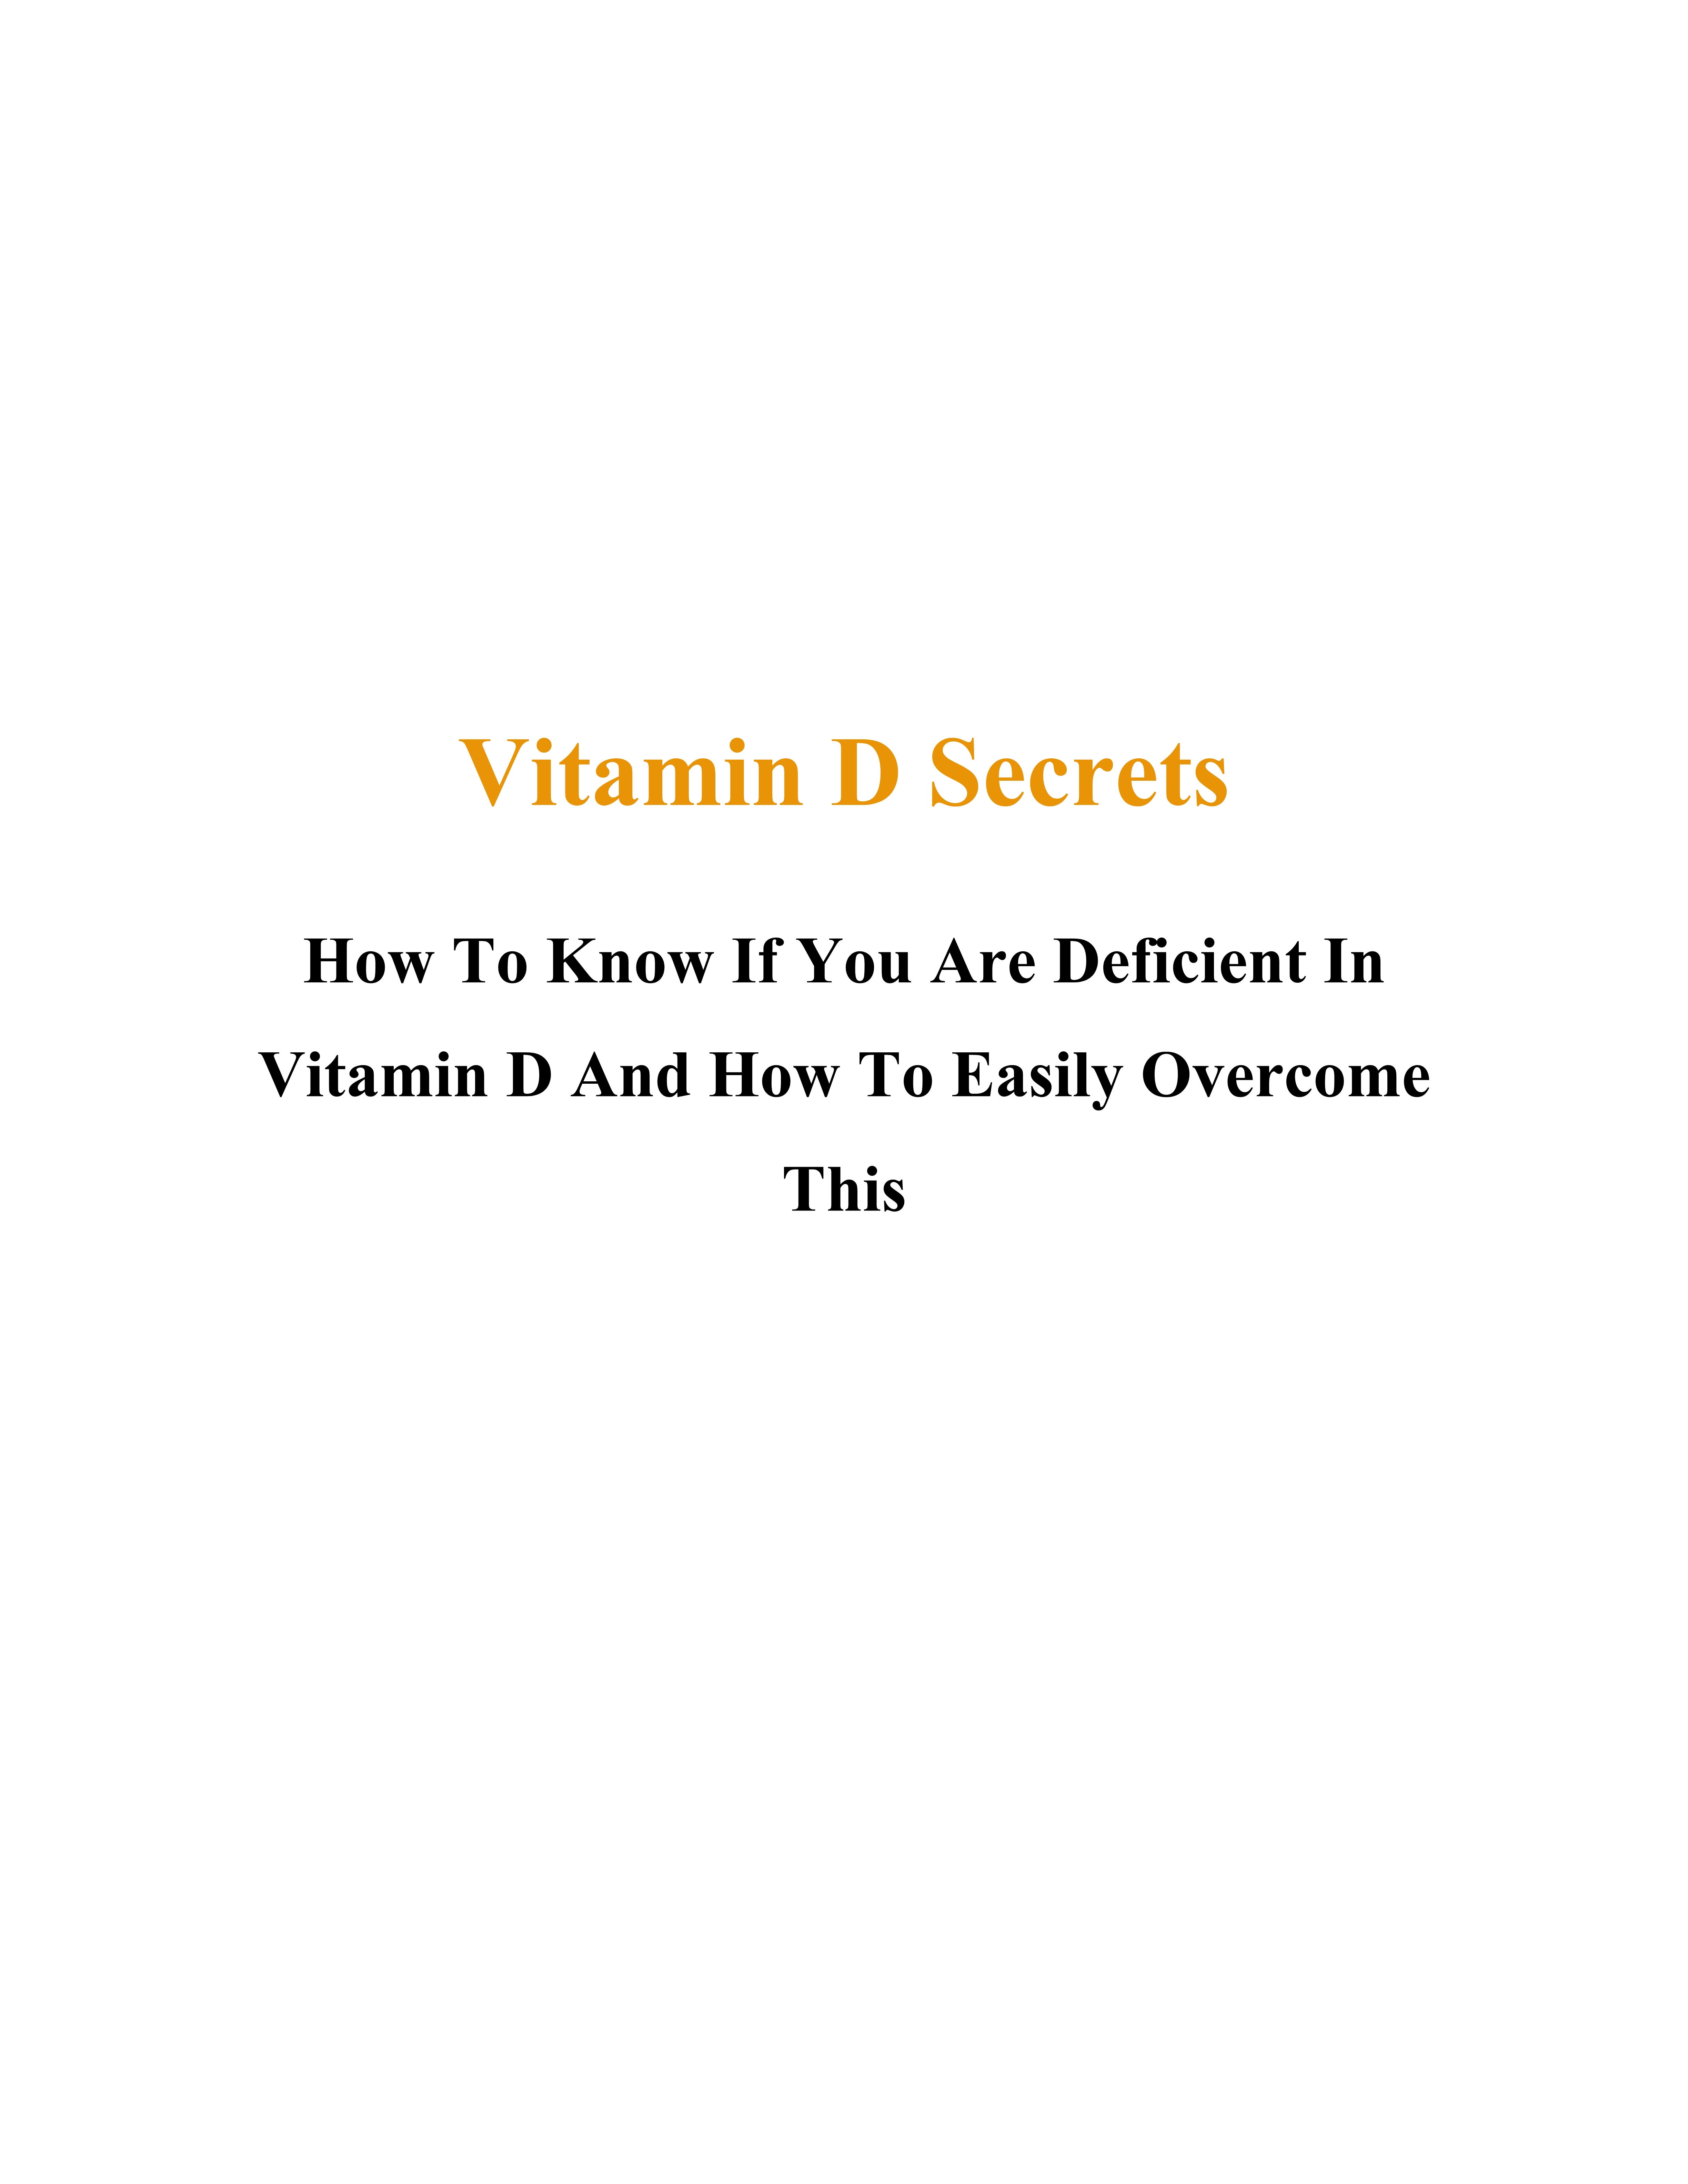 Vitamin-D-Secrets_2233b1801c82f68f2.jpeg